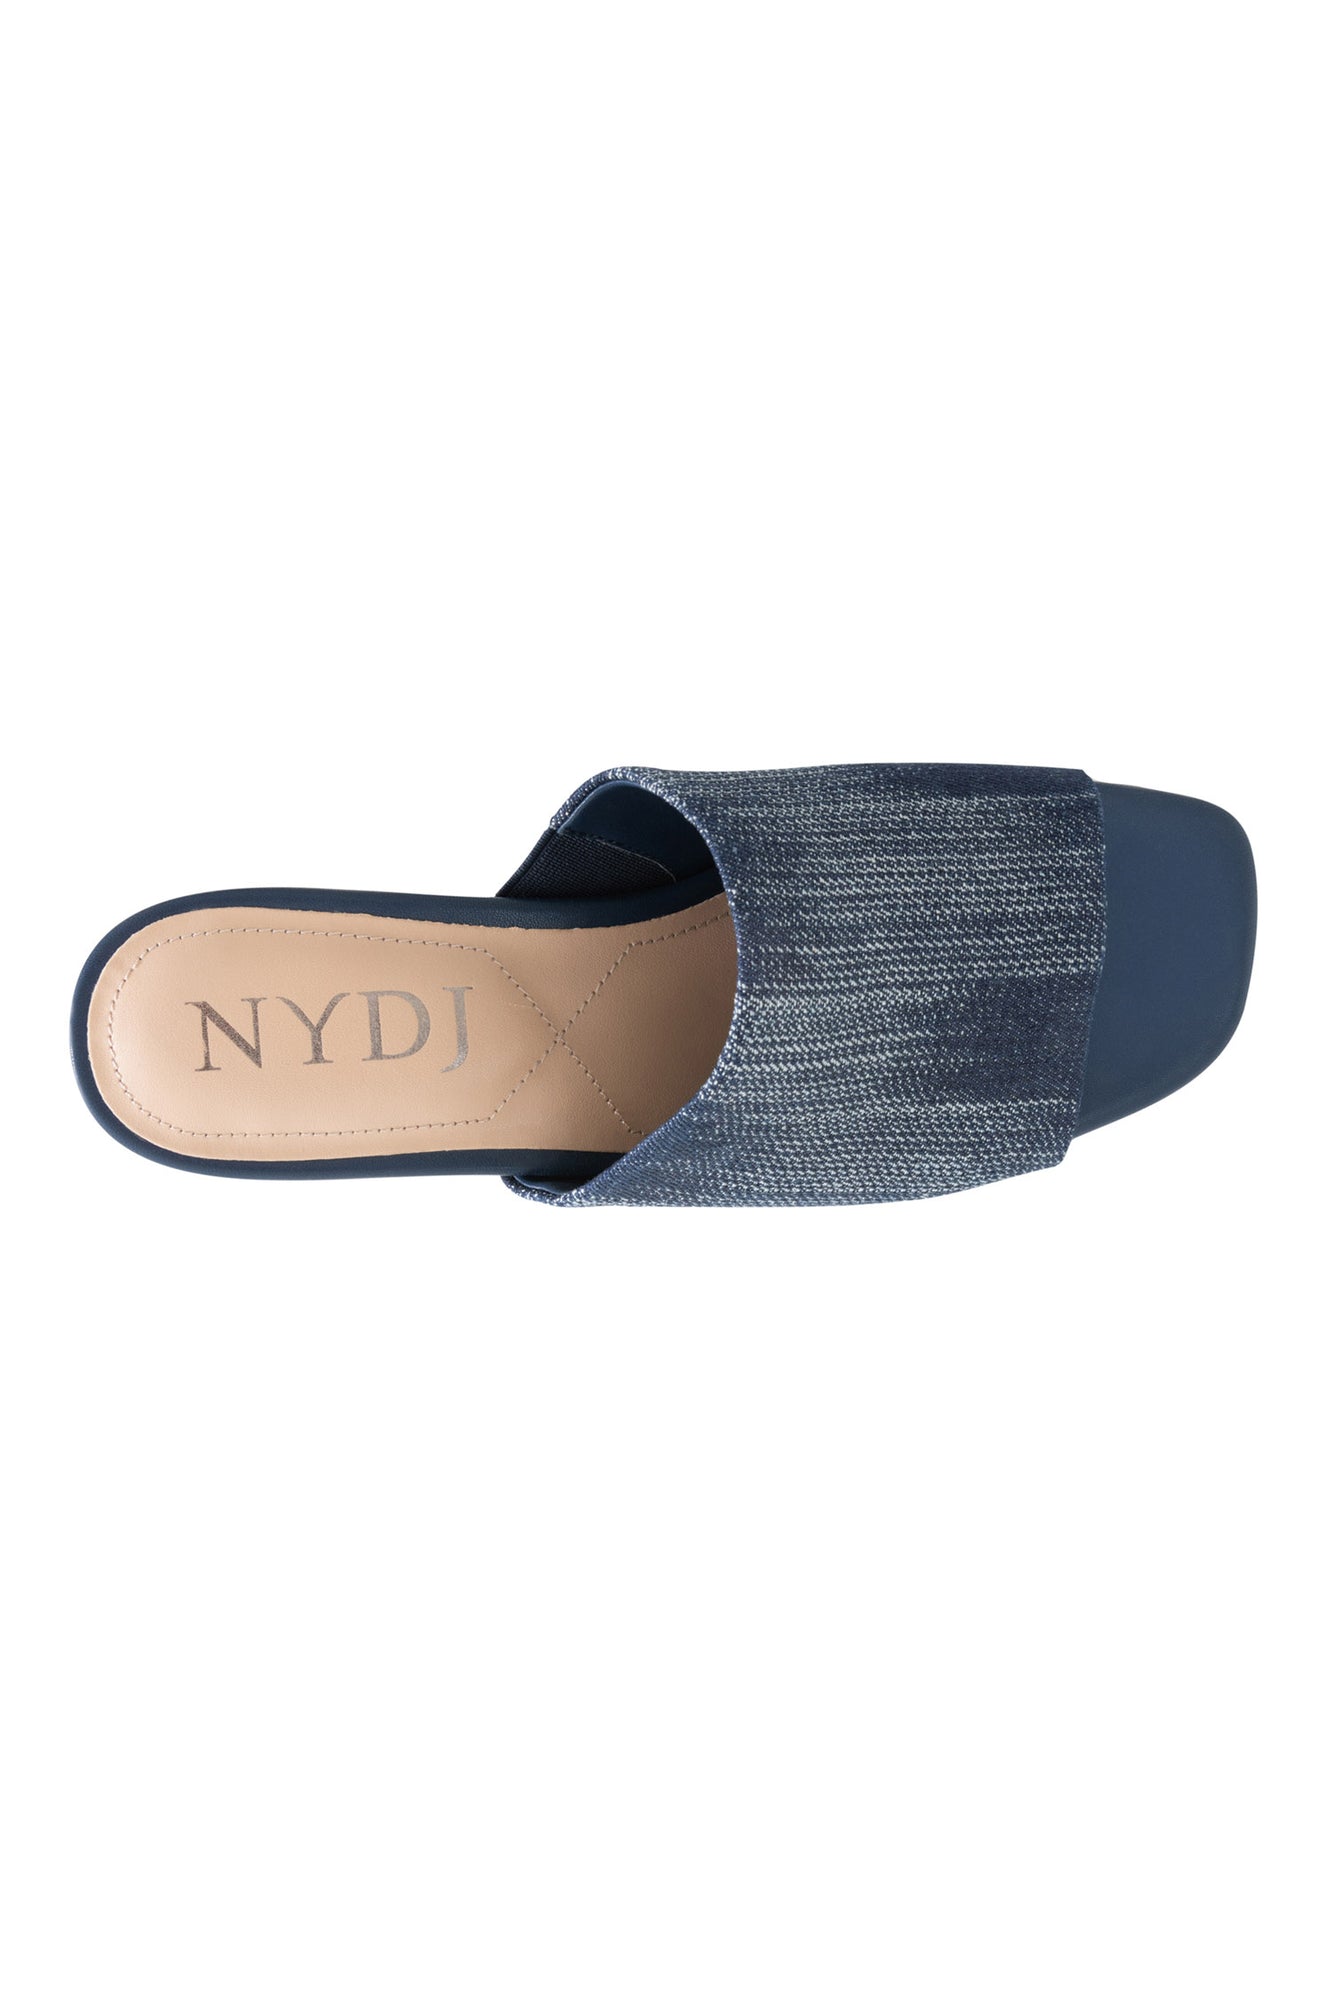 NYDJ Claudine Wedge Mule Sandals In Streaked Denim - Dark Blue